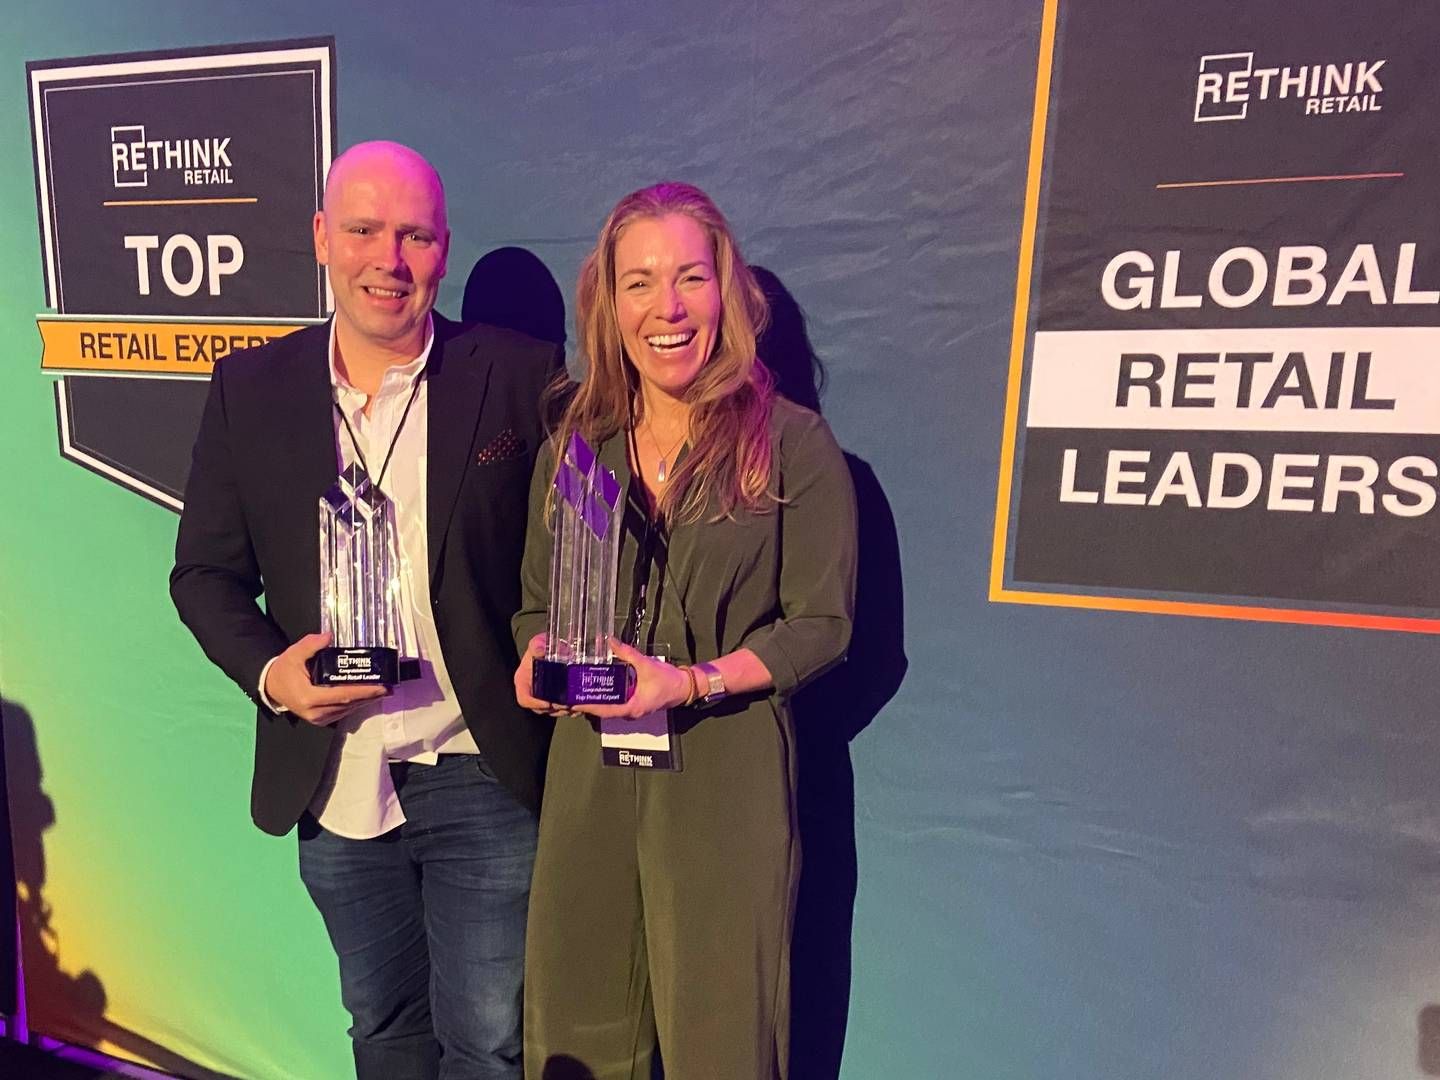 PRISET: Bård Kvamme, direktør for Norrøna Retail, sammen med Linda Pimmeshofer under utdelingen av pris for Global Retail Leader. | Foto: Norrøna